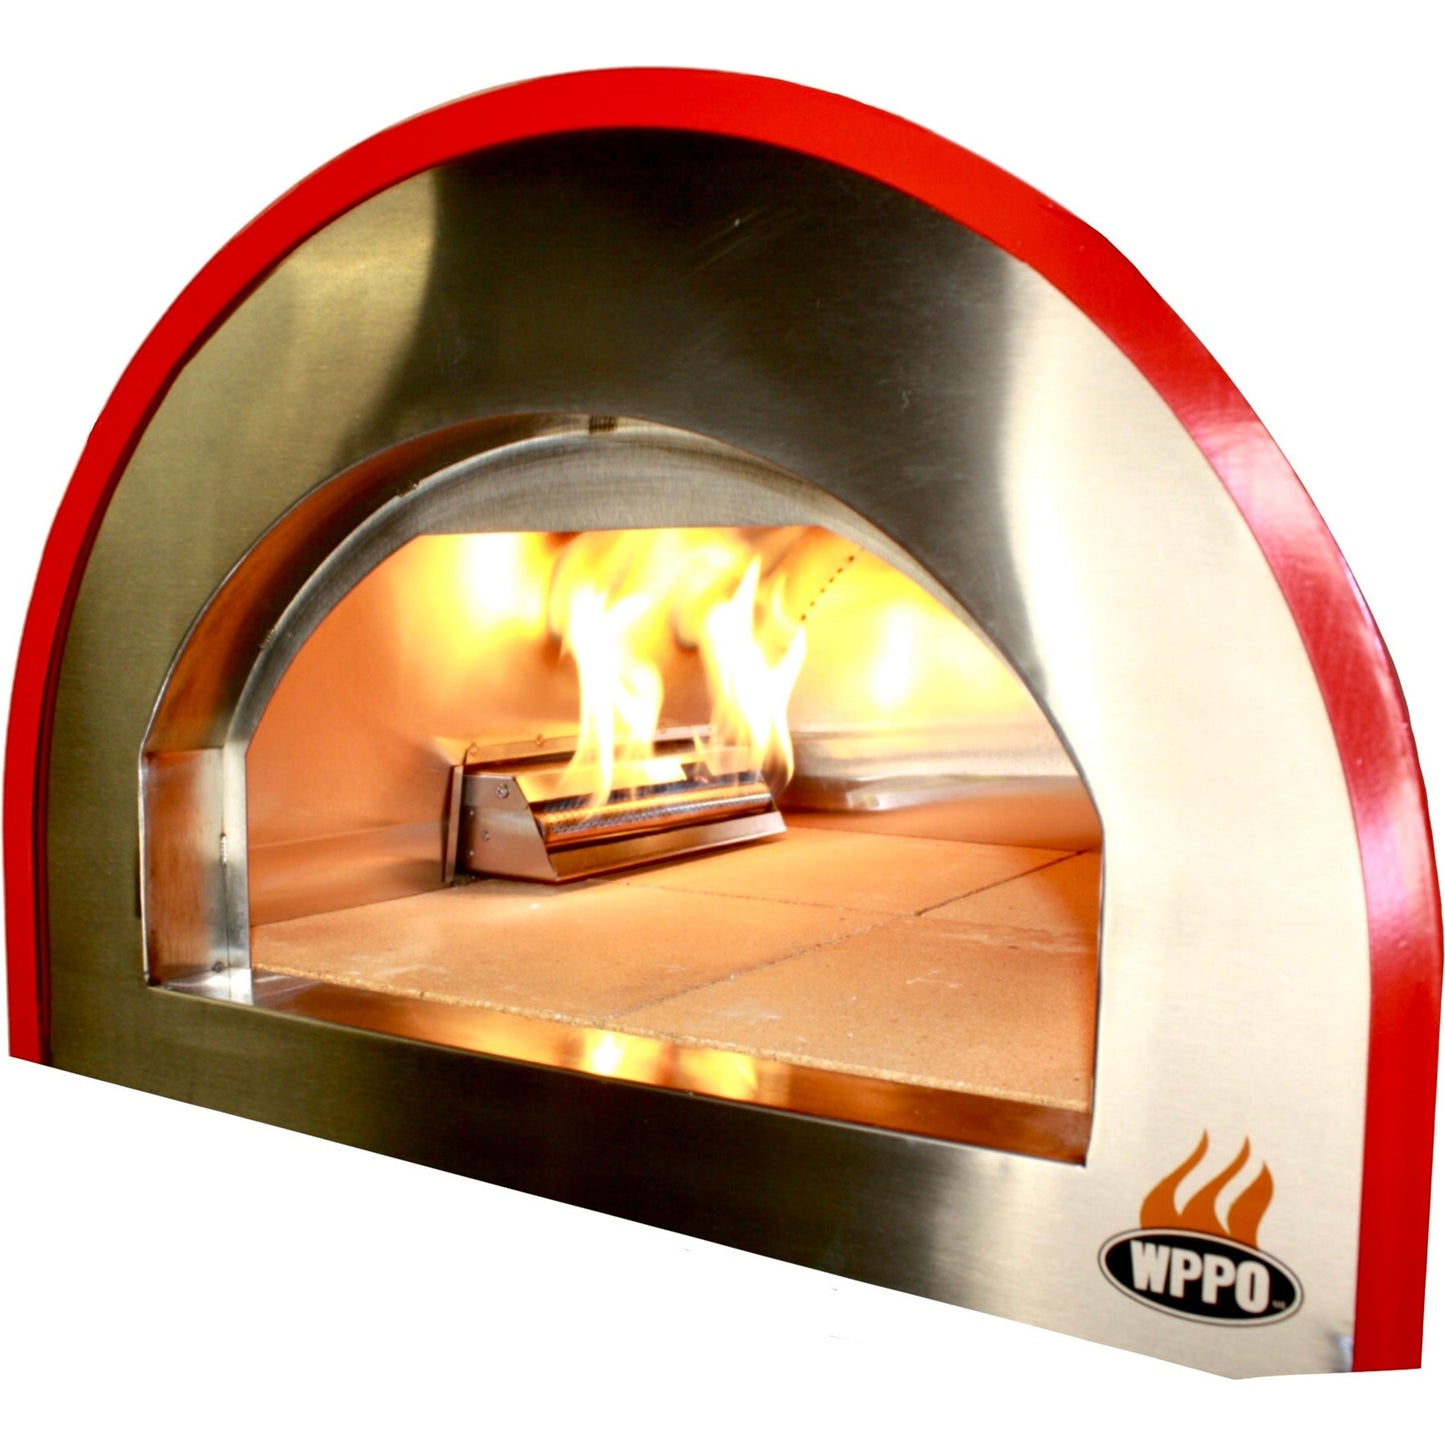 Pizza Oven Accessories - WPPO 33,000 BTU Gas Burner For Hybrid 25 In. Pizza Oven - WKEA-04-GAS